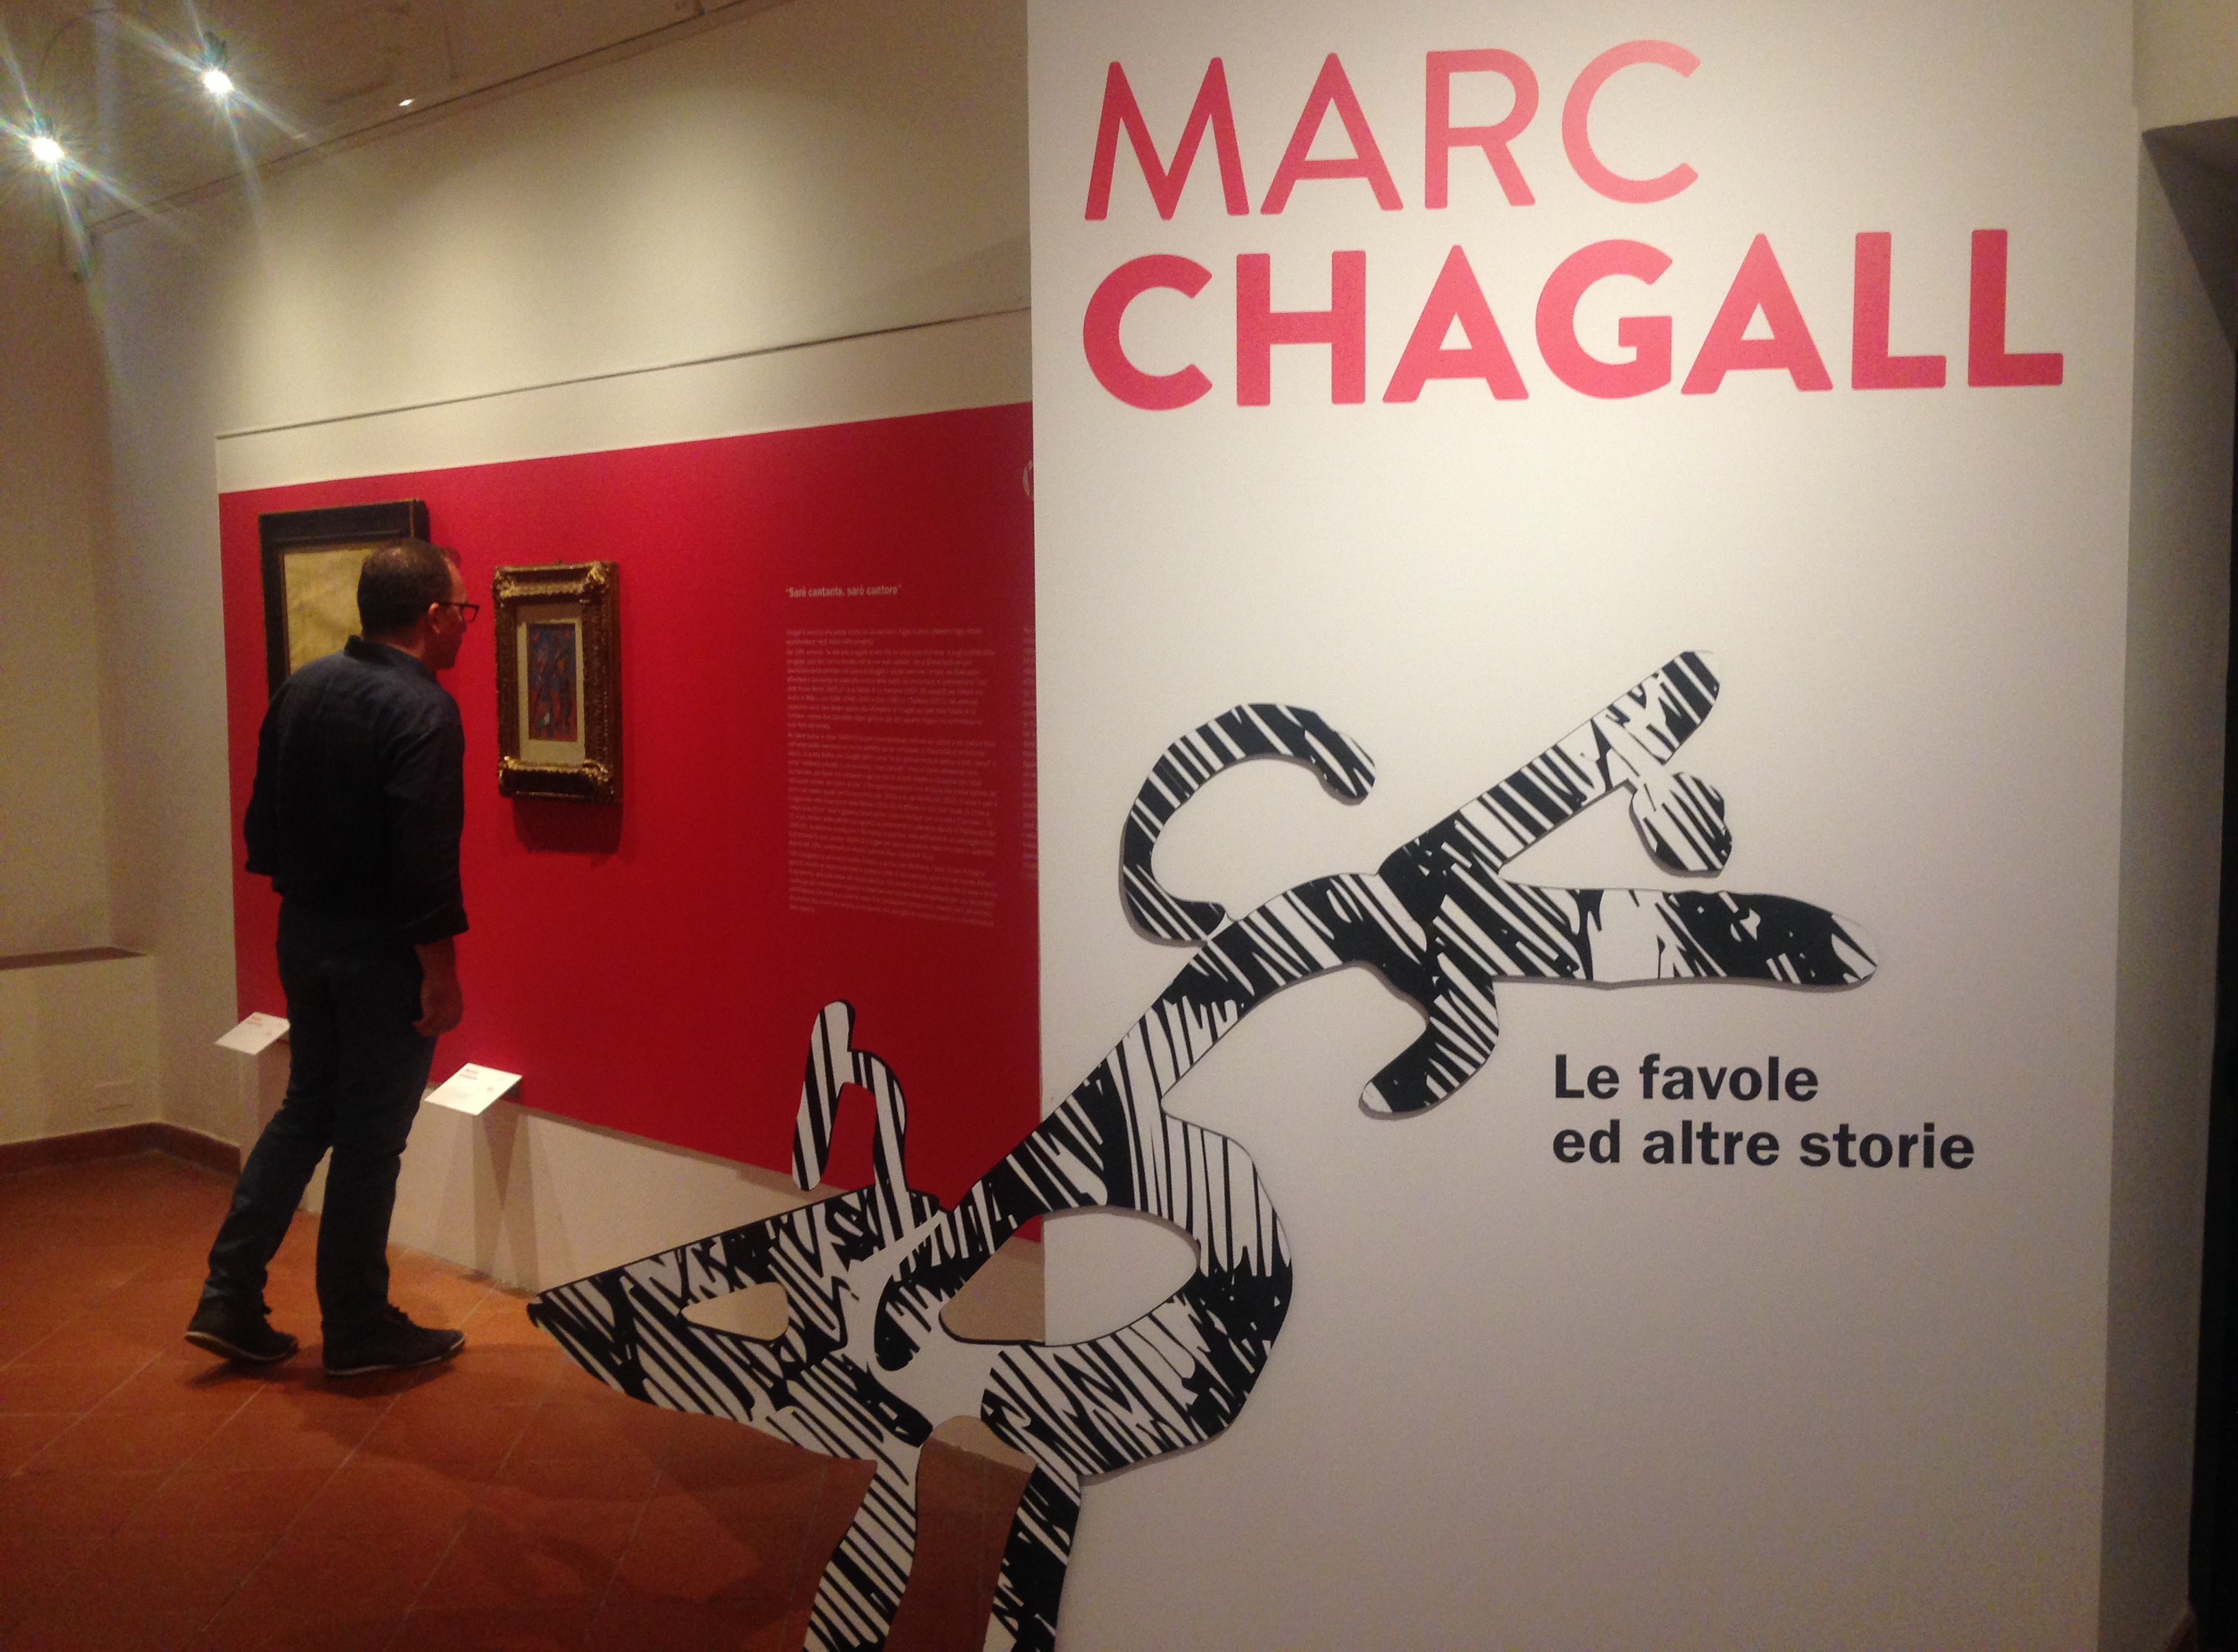 Ultimi giorni per ammirare “Le favole” di Chagall